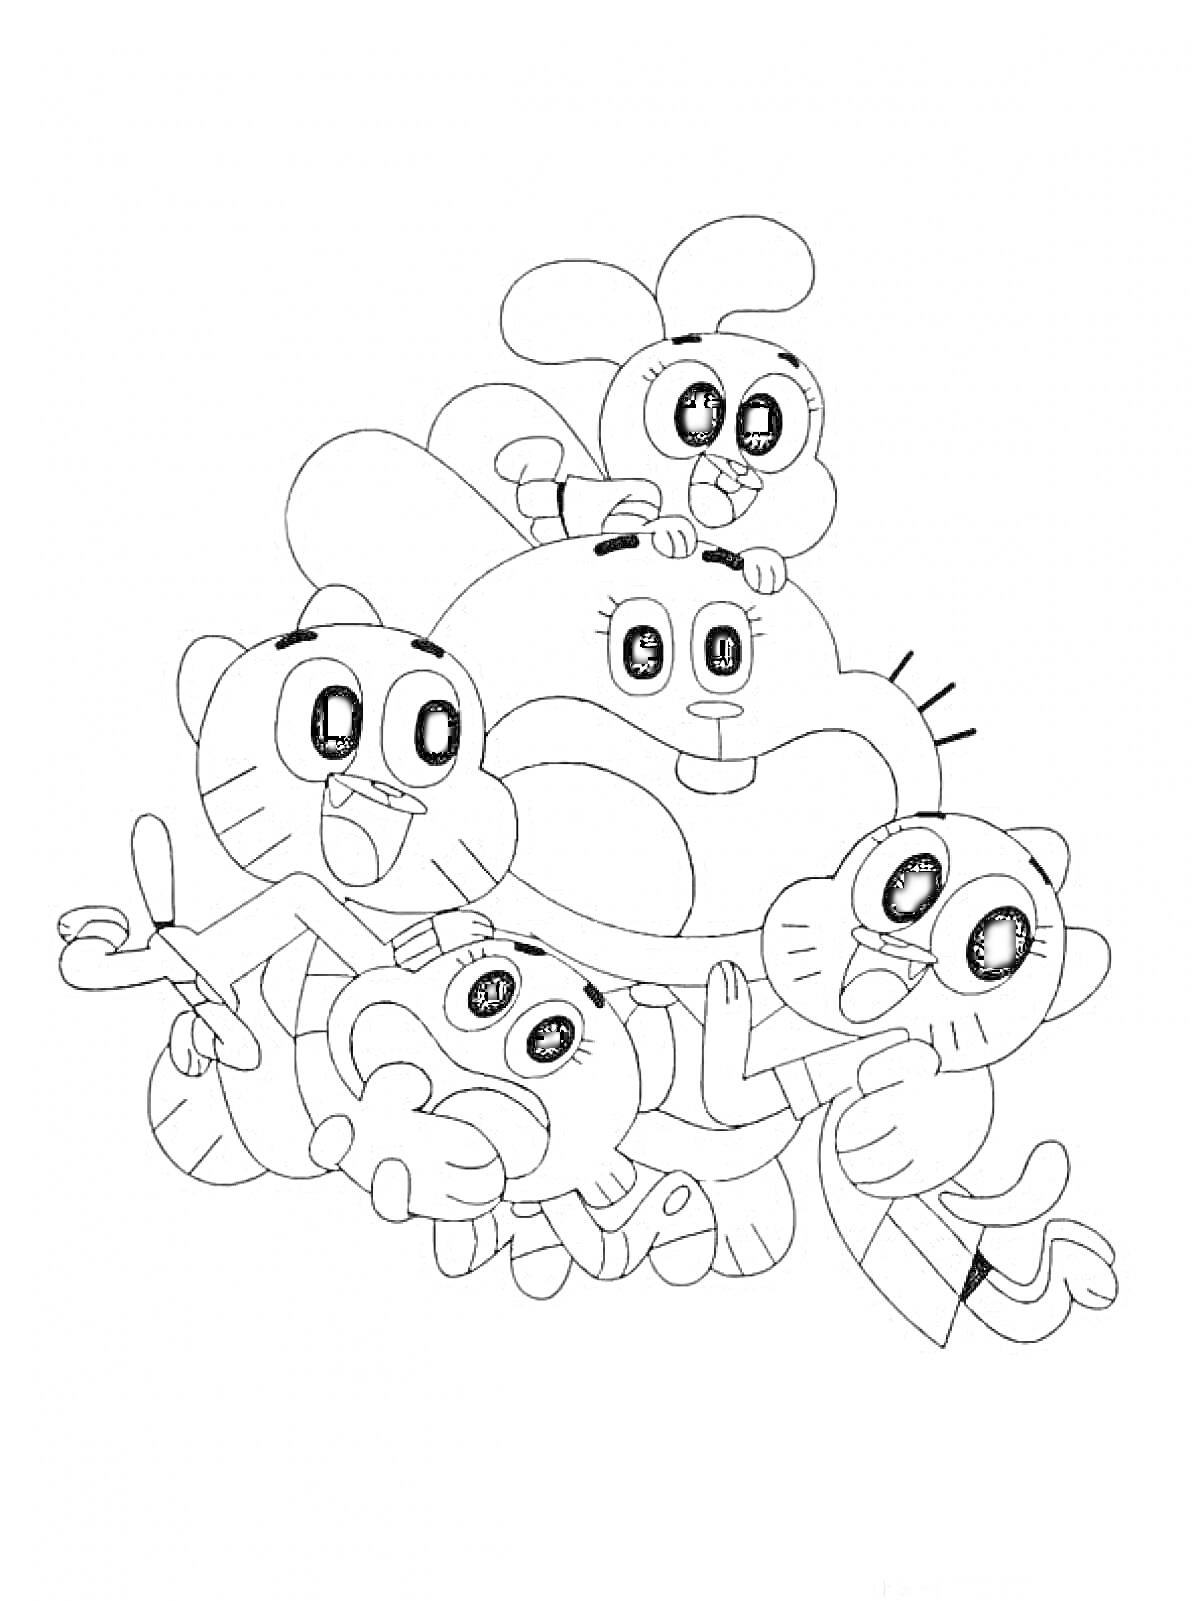 Раскраска Счастливая семья Гамбола с четырьмя персонажами, плотно обнявшими друг друга